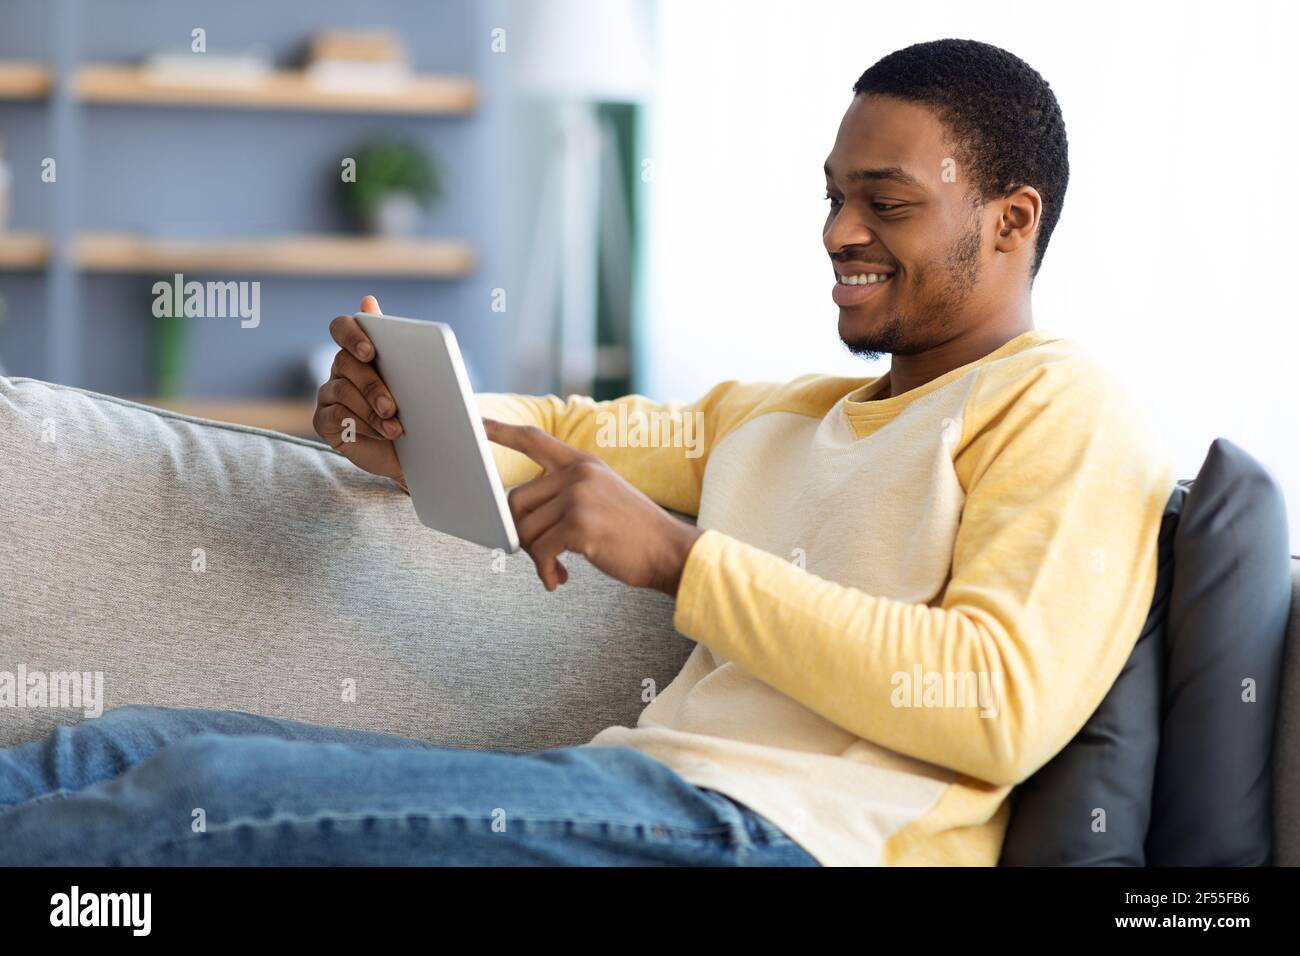 Felice americano aficano che riposa sul divano, usando un tablet digitale Foto Stock